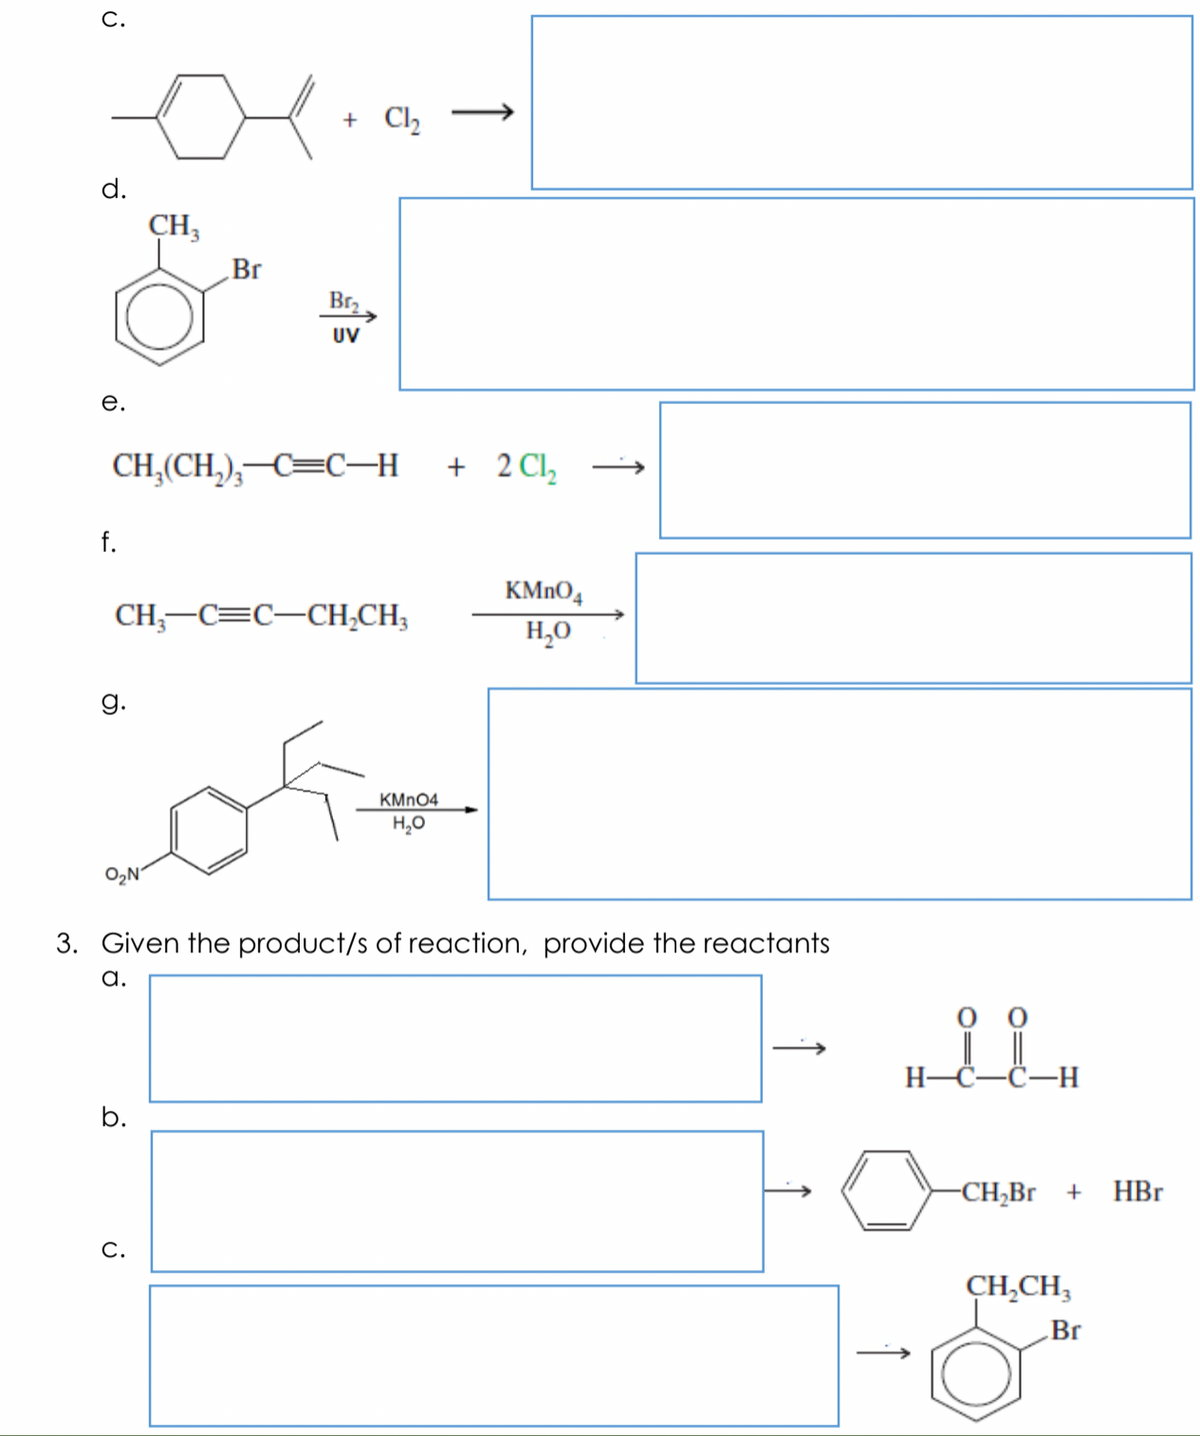 С.
+ Cl
d.
CH3
Br
Br,
UV
е.
CH,(CH,),–C=C–H + 2Cl,
f.
KMNO,
CH;-C=C-CH,CH;
H,0
g.
KMN04
H,0
O2N'
3. Given the product/s of reaction, provide the reactants
a.
H-Č-C-H
b.
-CH,Br +
HBr
С.
CH,CH,
Br
↑
